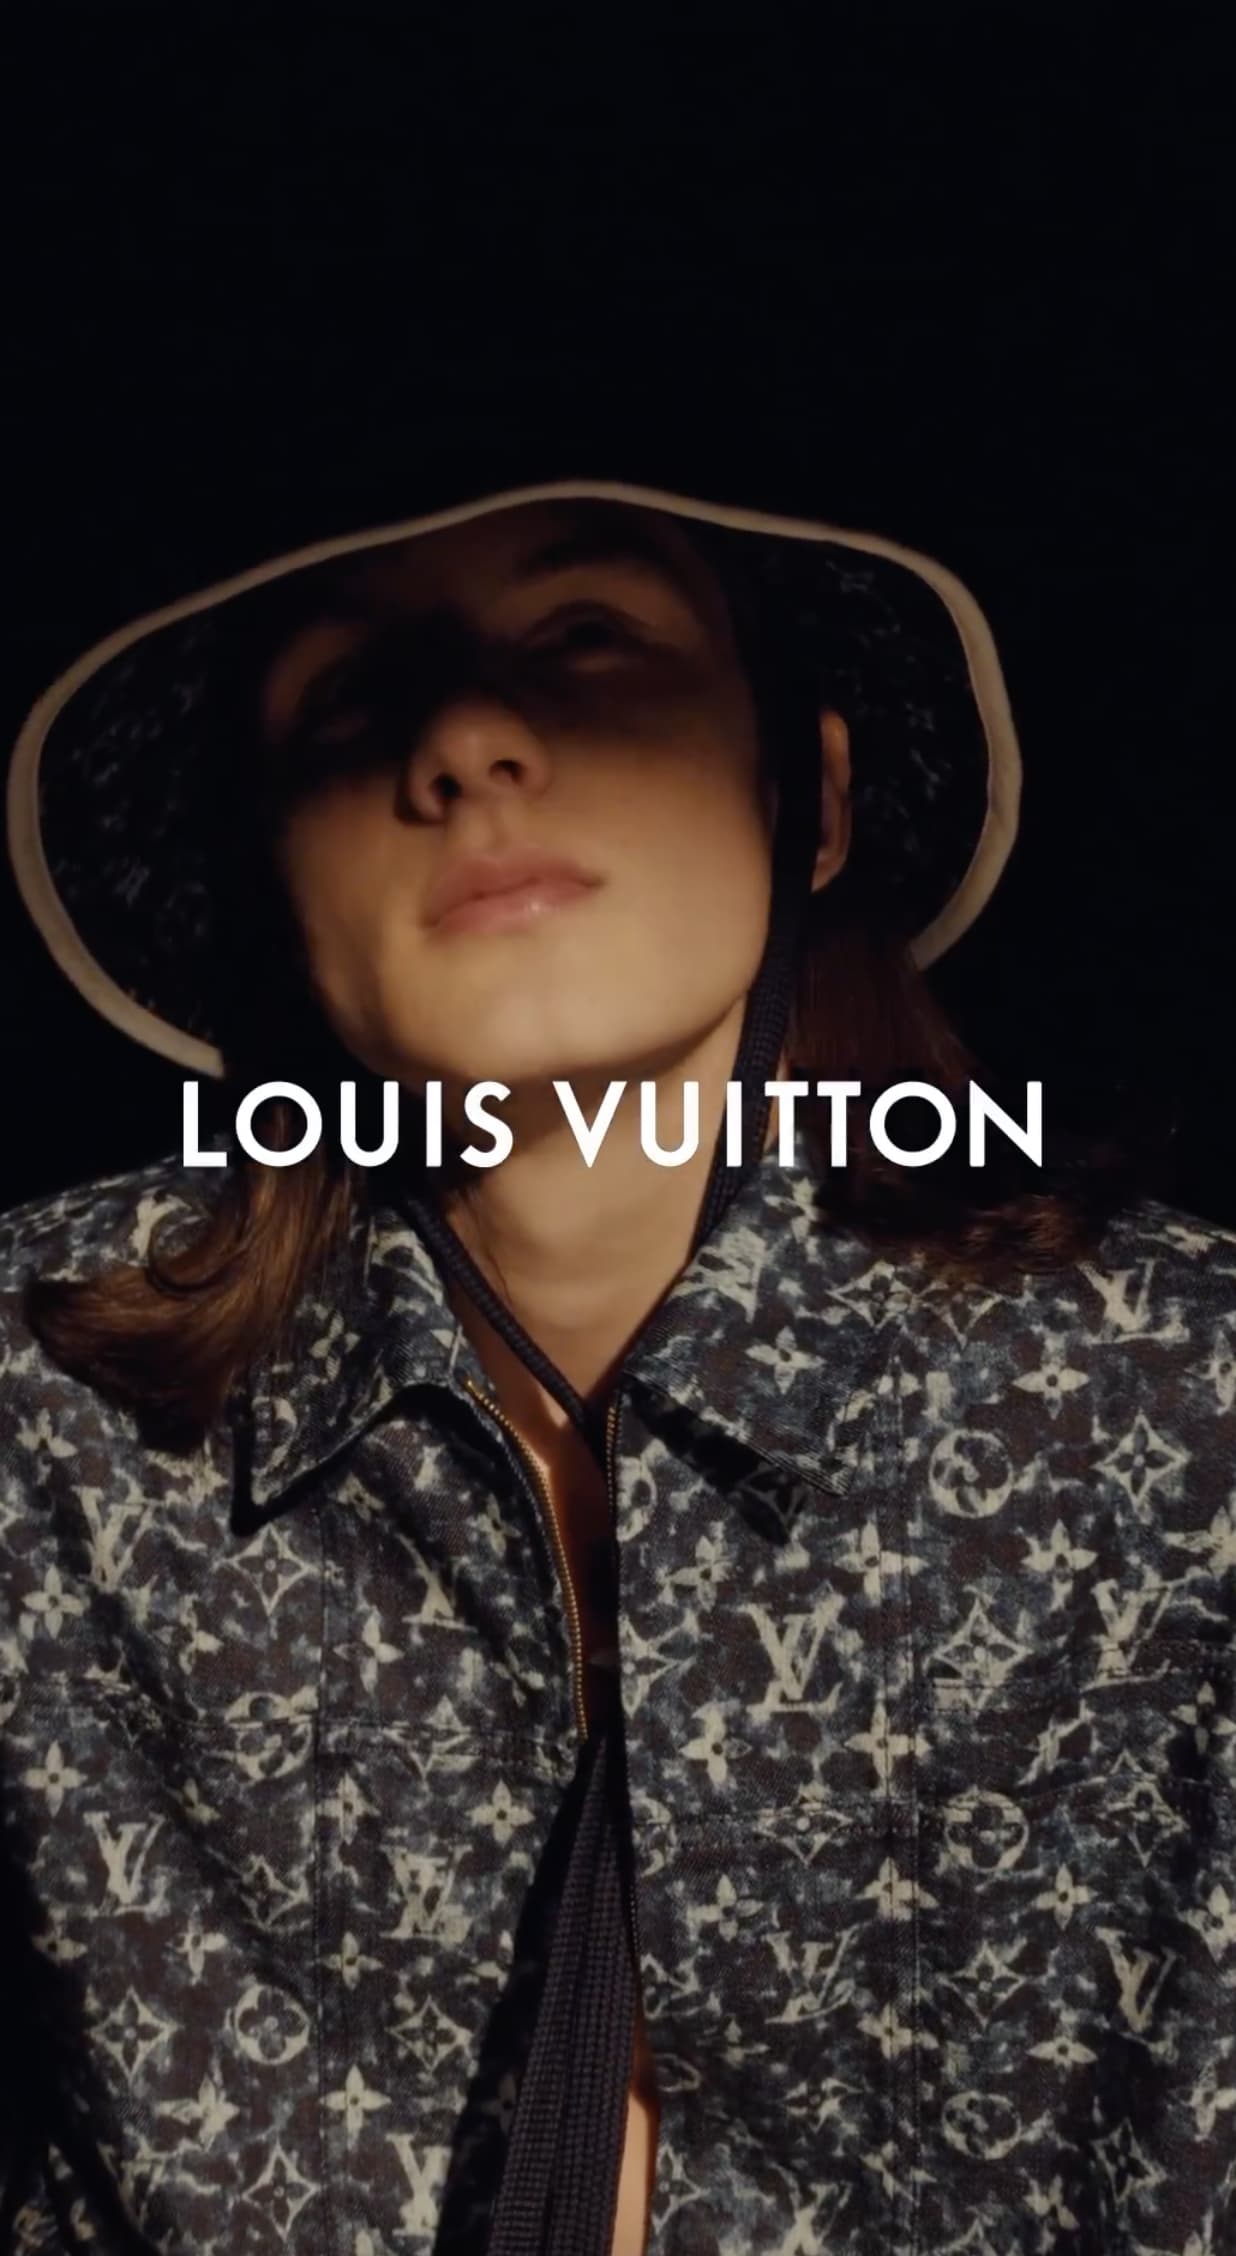 Louis Vuitton 'Malle Vesitiaire' 2023 Ad Campaign